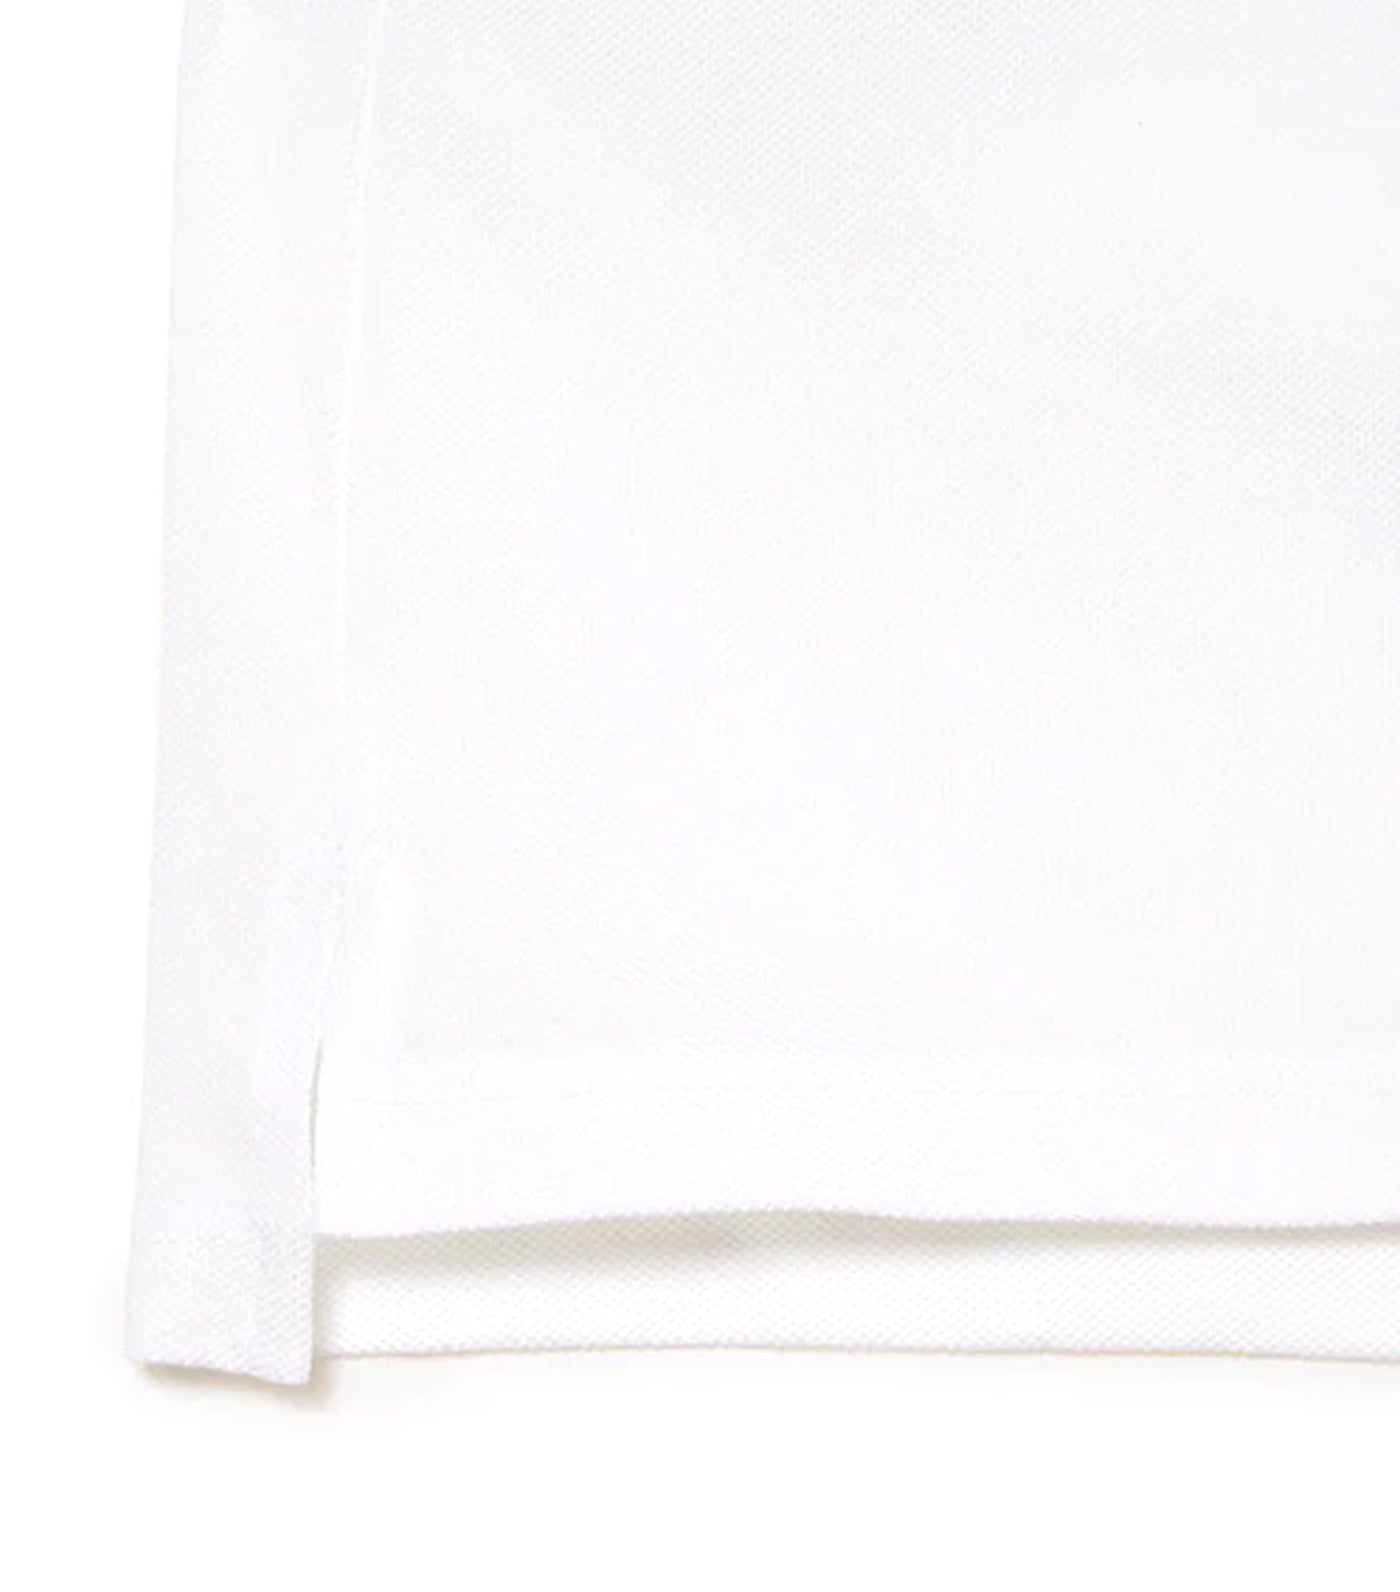 Women's Lacoste Regular Fit Soft Cotton Petit Piqué Polo Shirt White